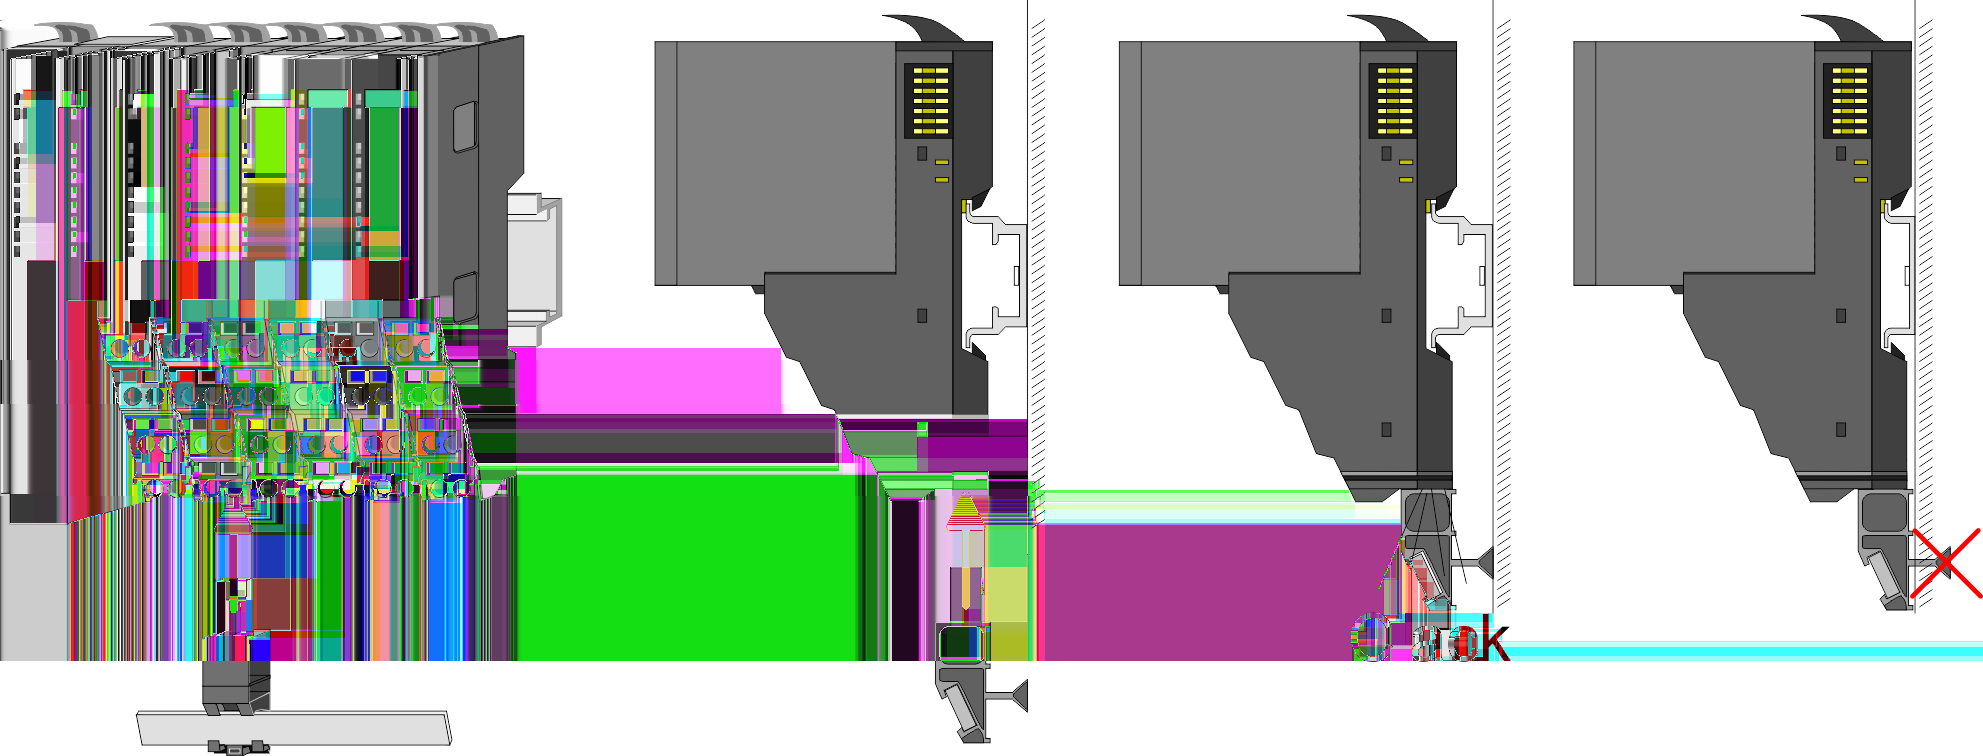 Grundlagen und Montage VIPA System SLIO Montage Montage Bus-Blende Peripherie-Modul Nachdem Sie Ihr Gesamt-System montiert haben, müssen Sie zum Schutz der Bus-Kontakte die Bus-Blende am äußersten